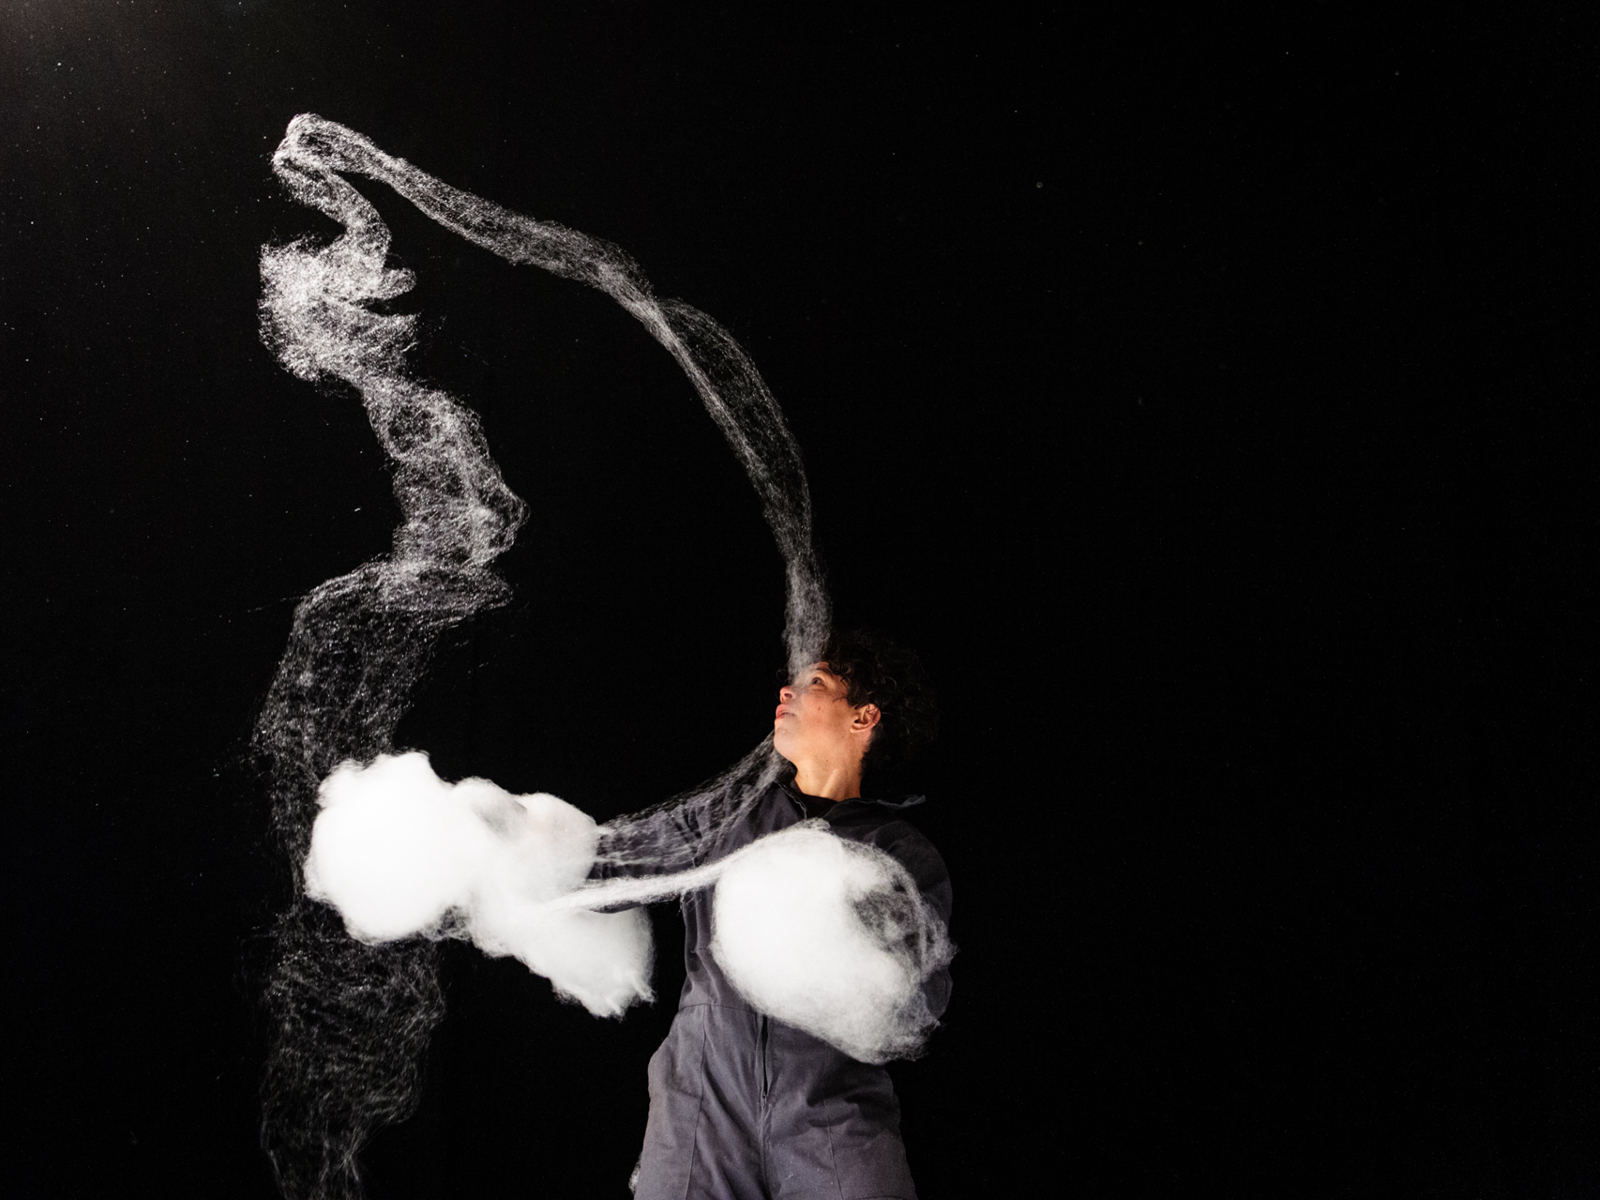 Performerin bewegt Zuckerwatte in der Luft über sich.